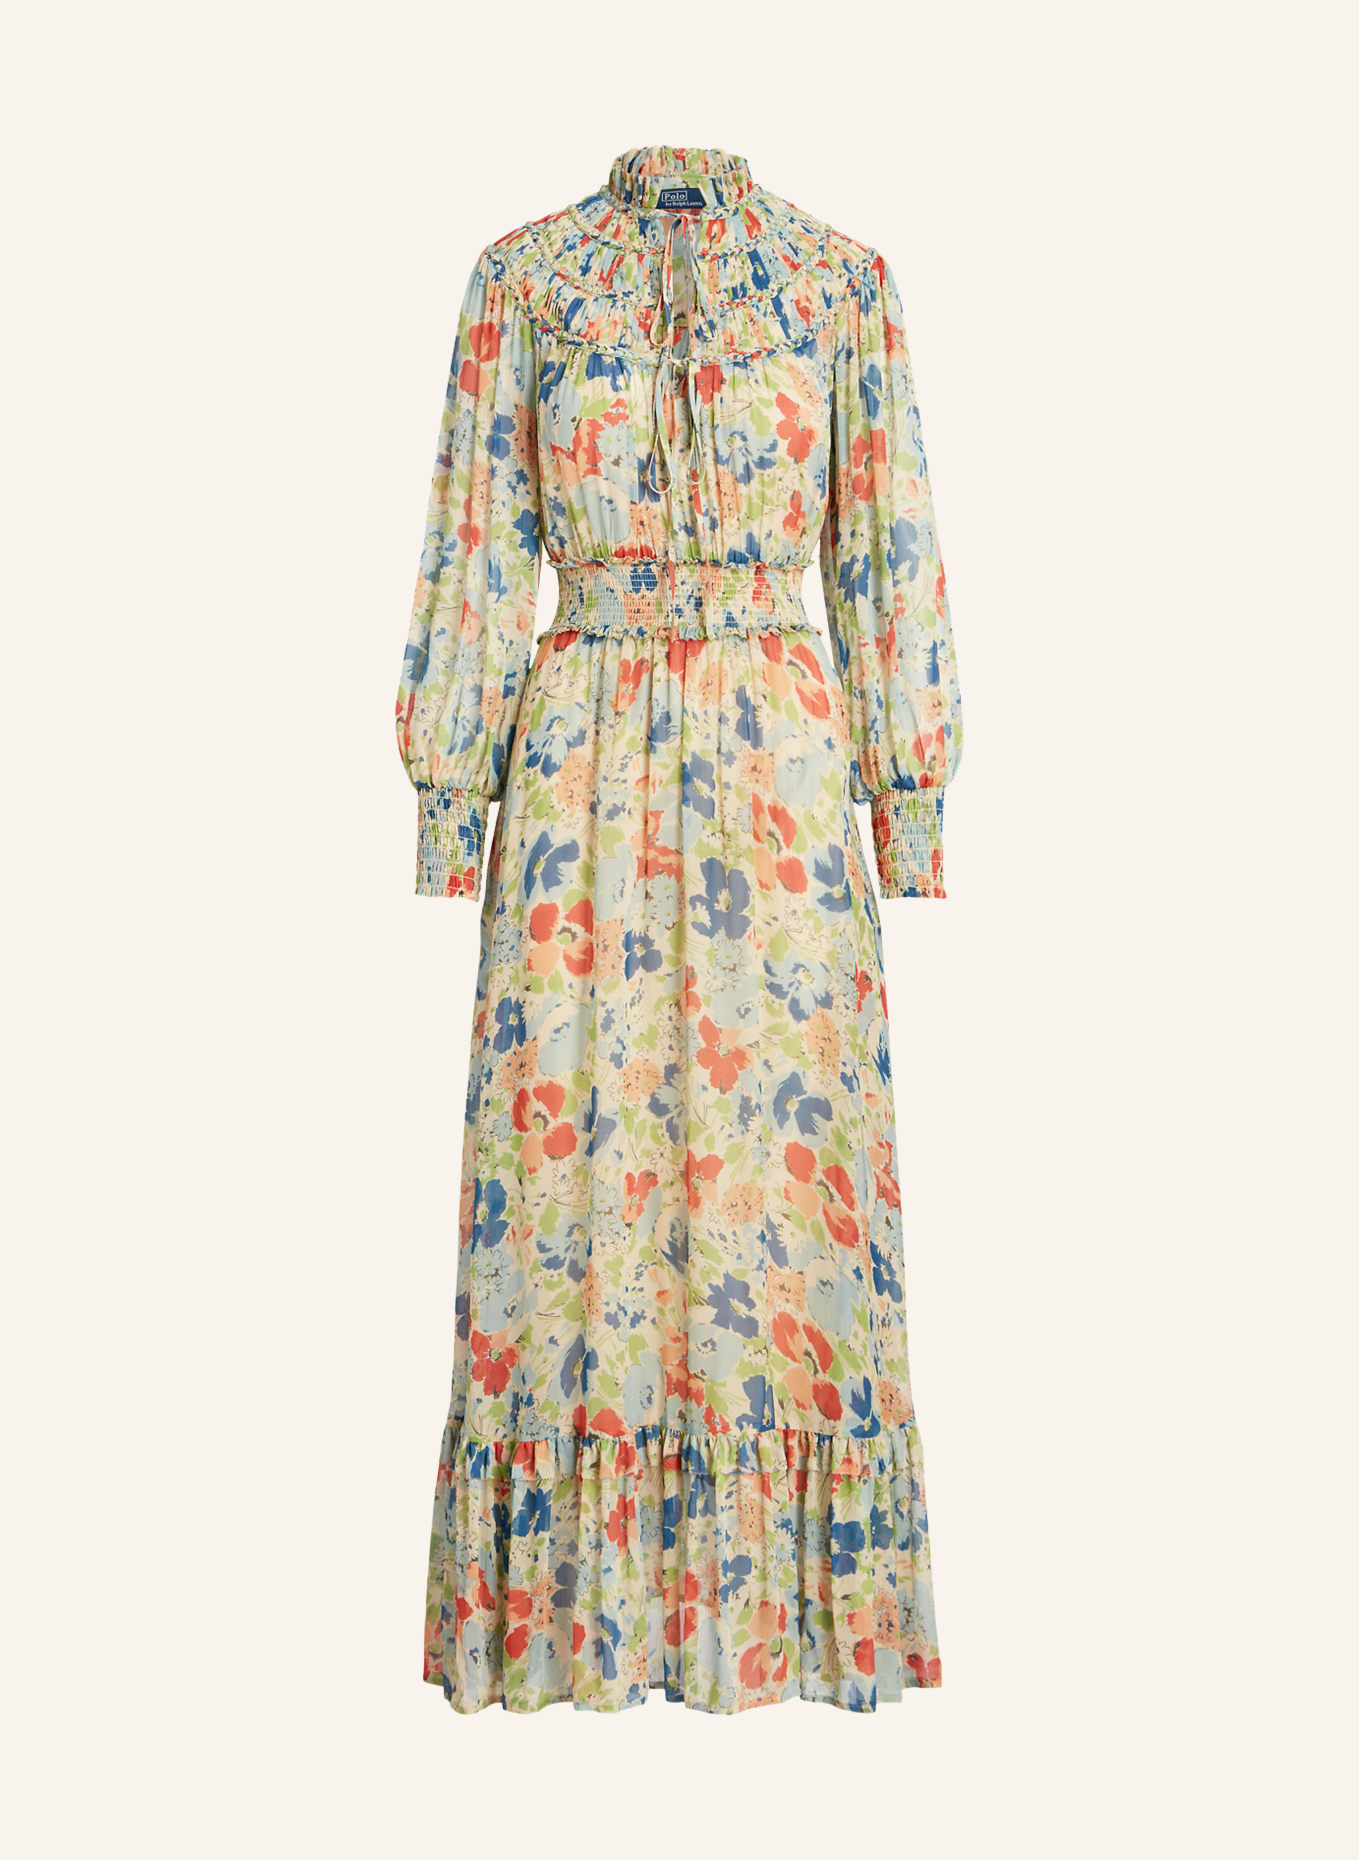 POLO RALPH LAUREN Kleid mit Rüschen, Farbe: BLAU/ GRÜN/ ORANGE (Bild 1)